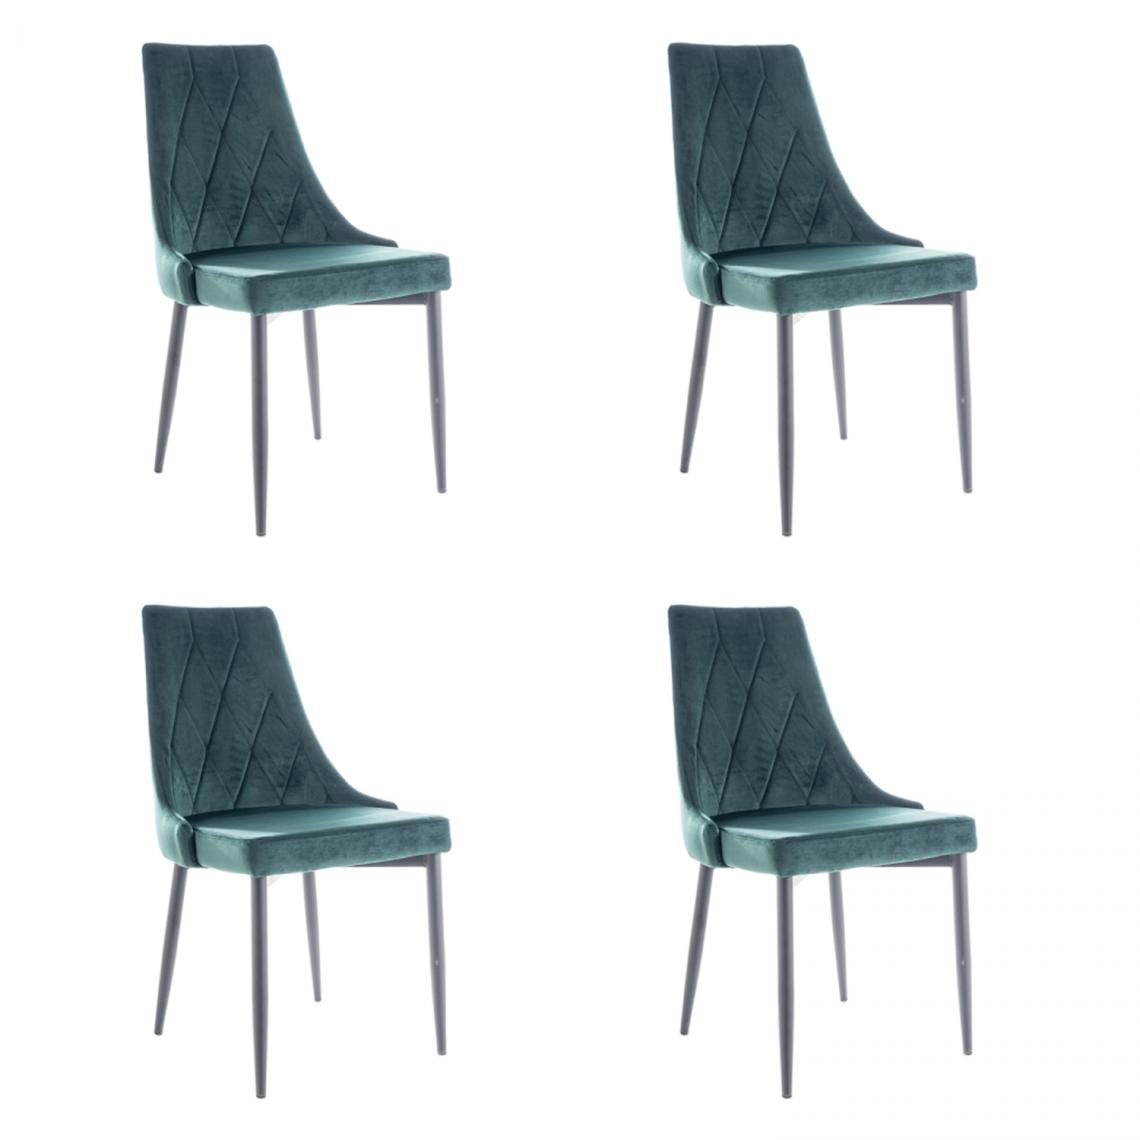 Hucoco - MELLEN - Lot de 4 chaises en tissu velouté - Style oriental - 88x46x46 cm - Structure en métal - Vert - Chaises